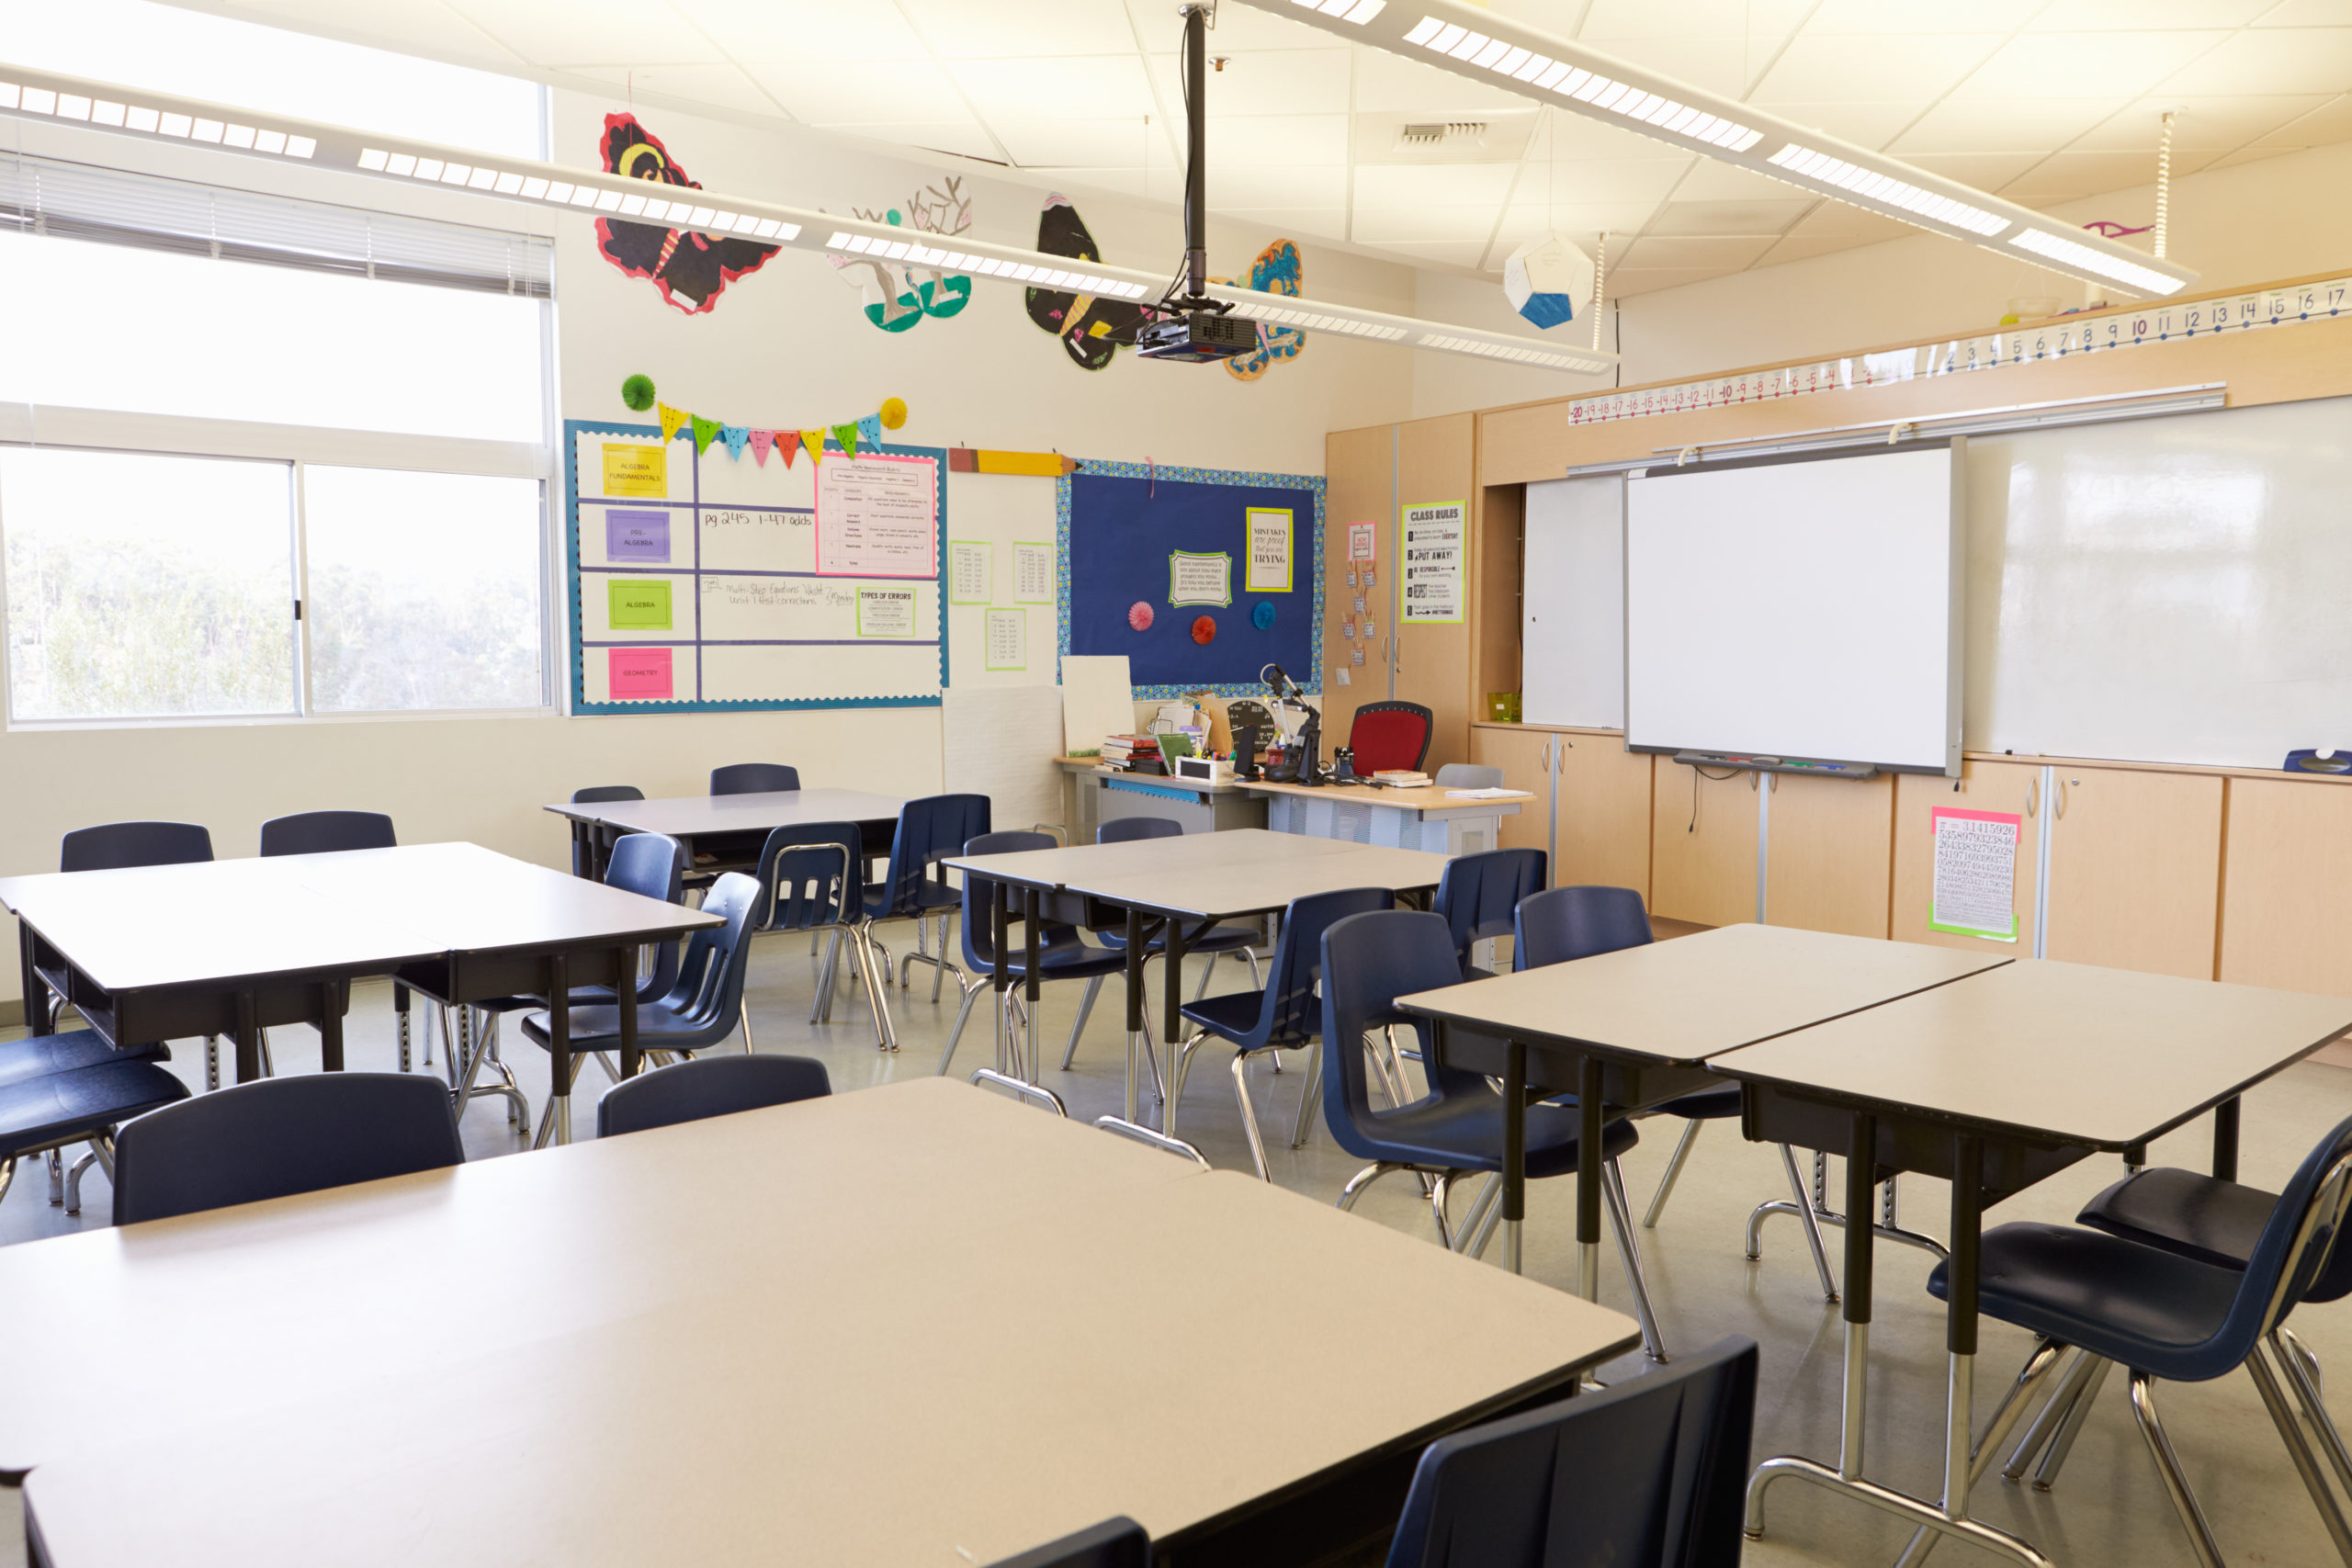 Teachers’ low morale plagues D.C. union, school district